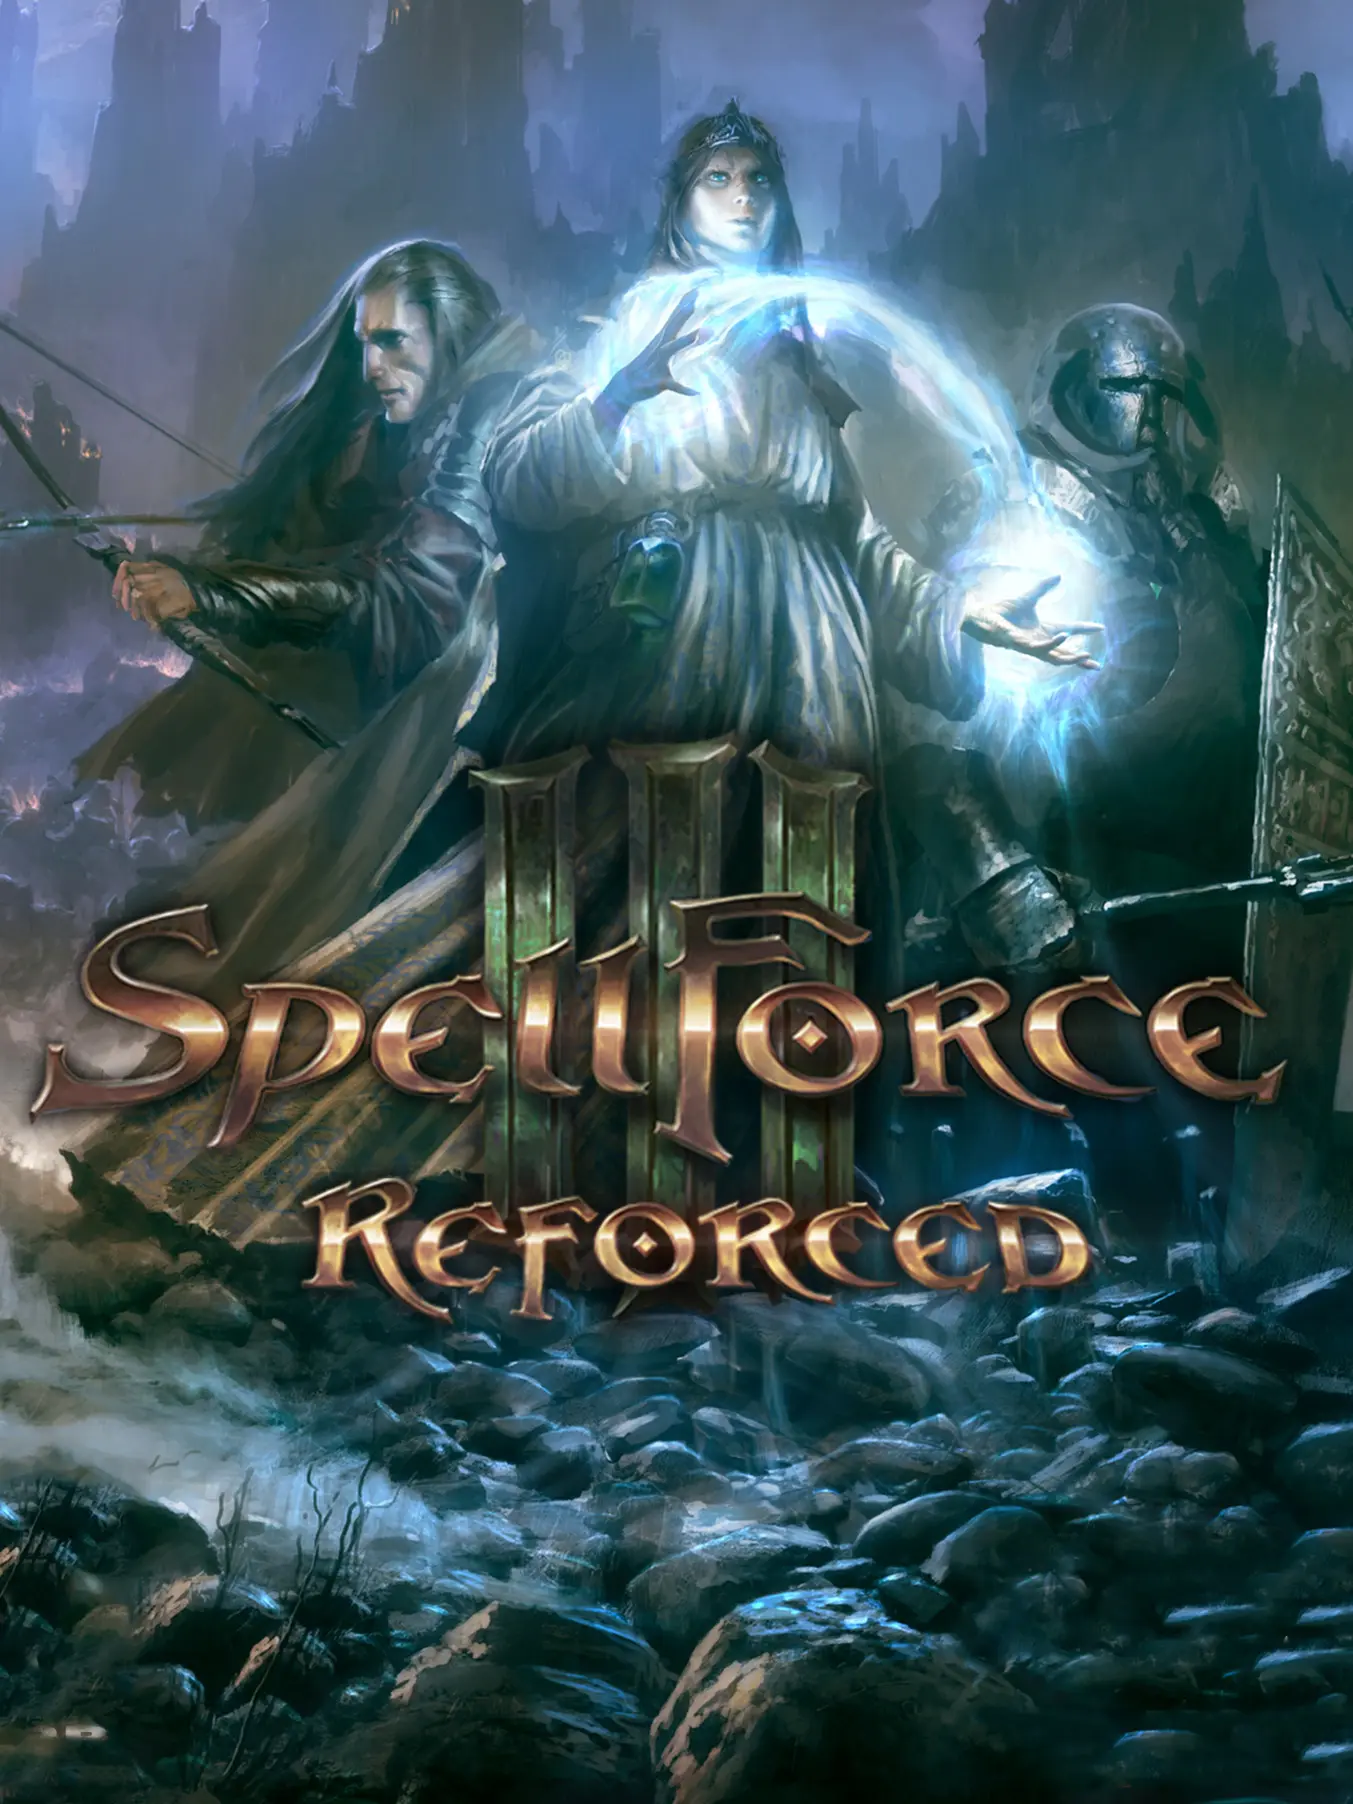 SpellForce 3 (PC) - Steam - Digital Code